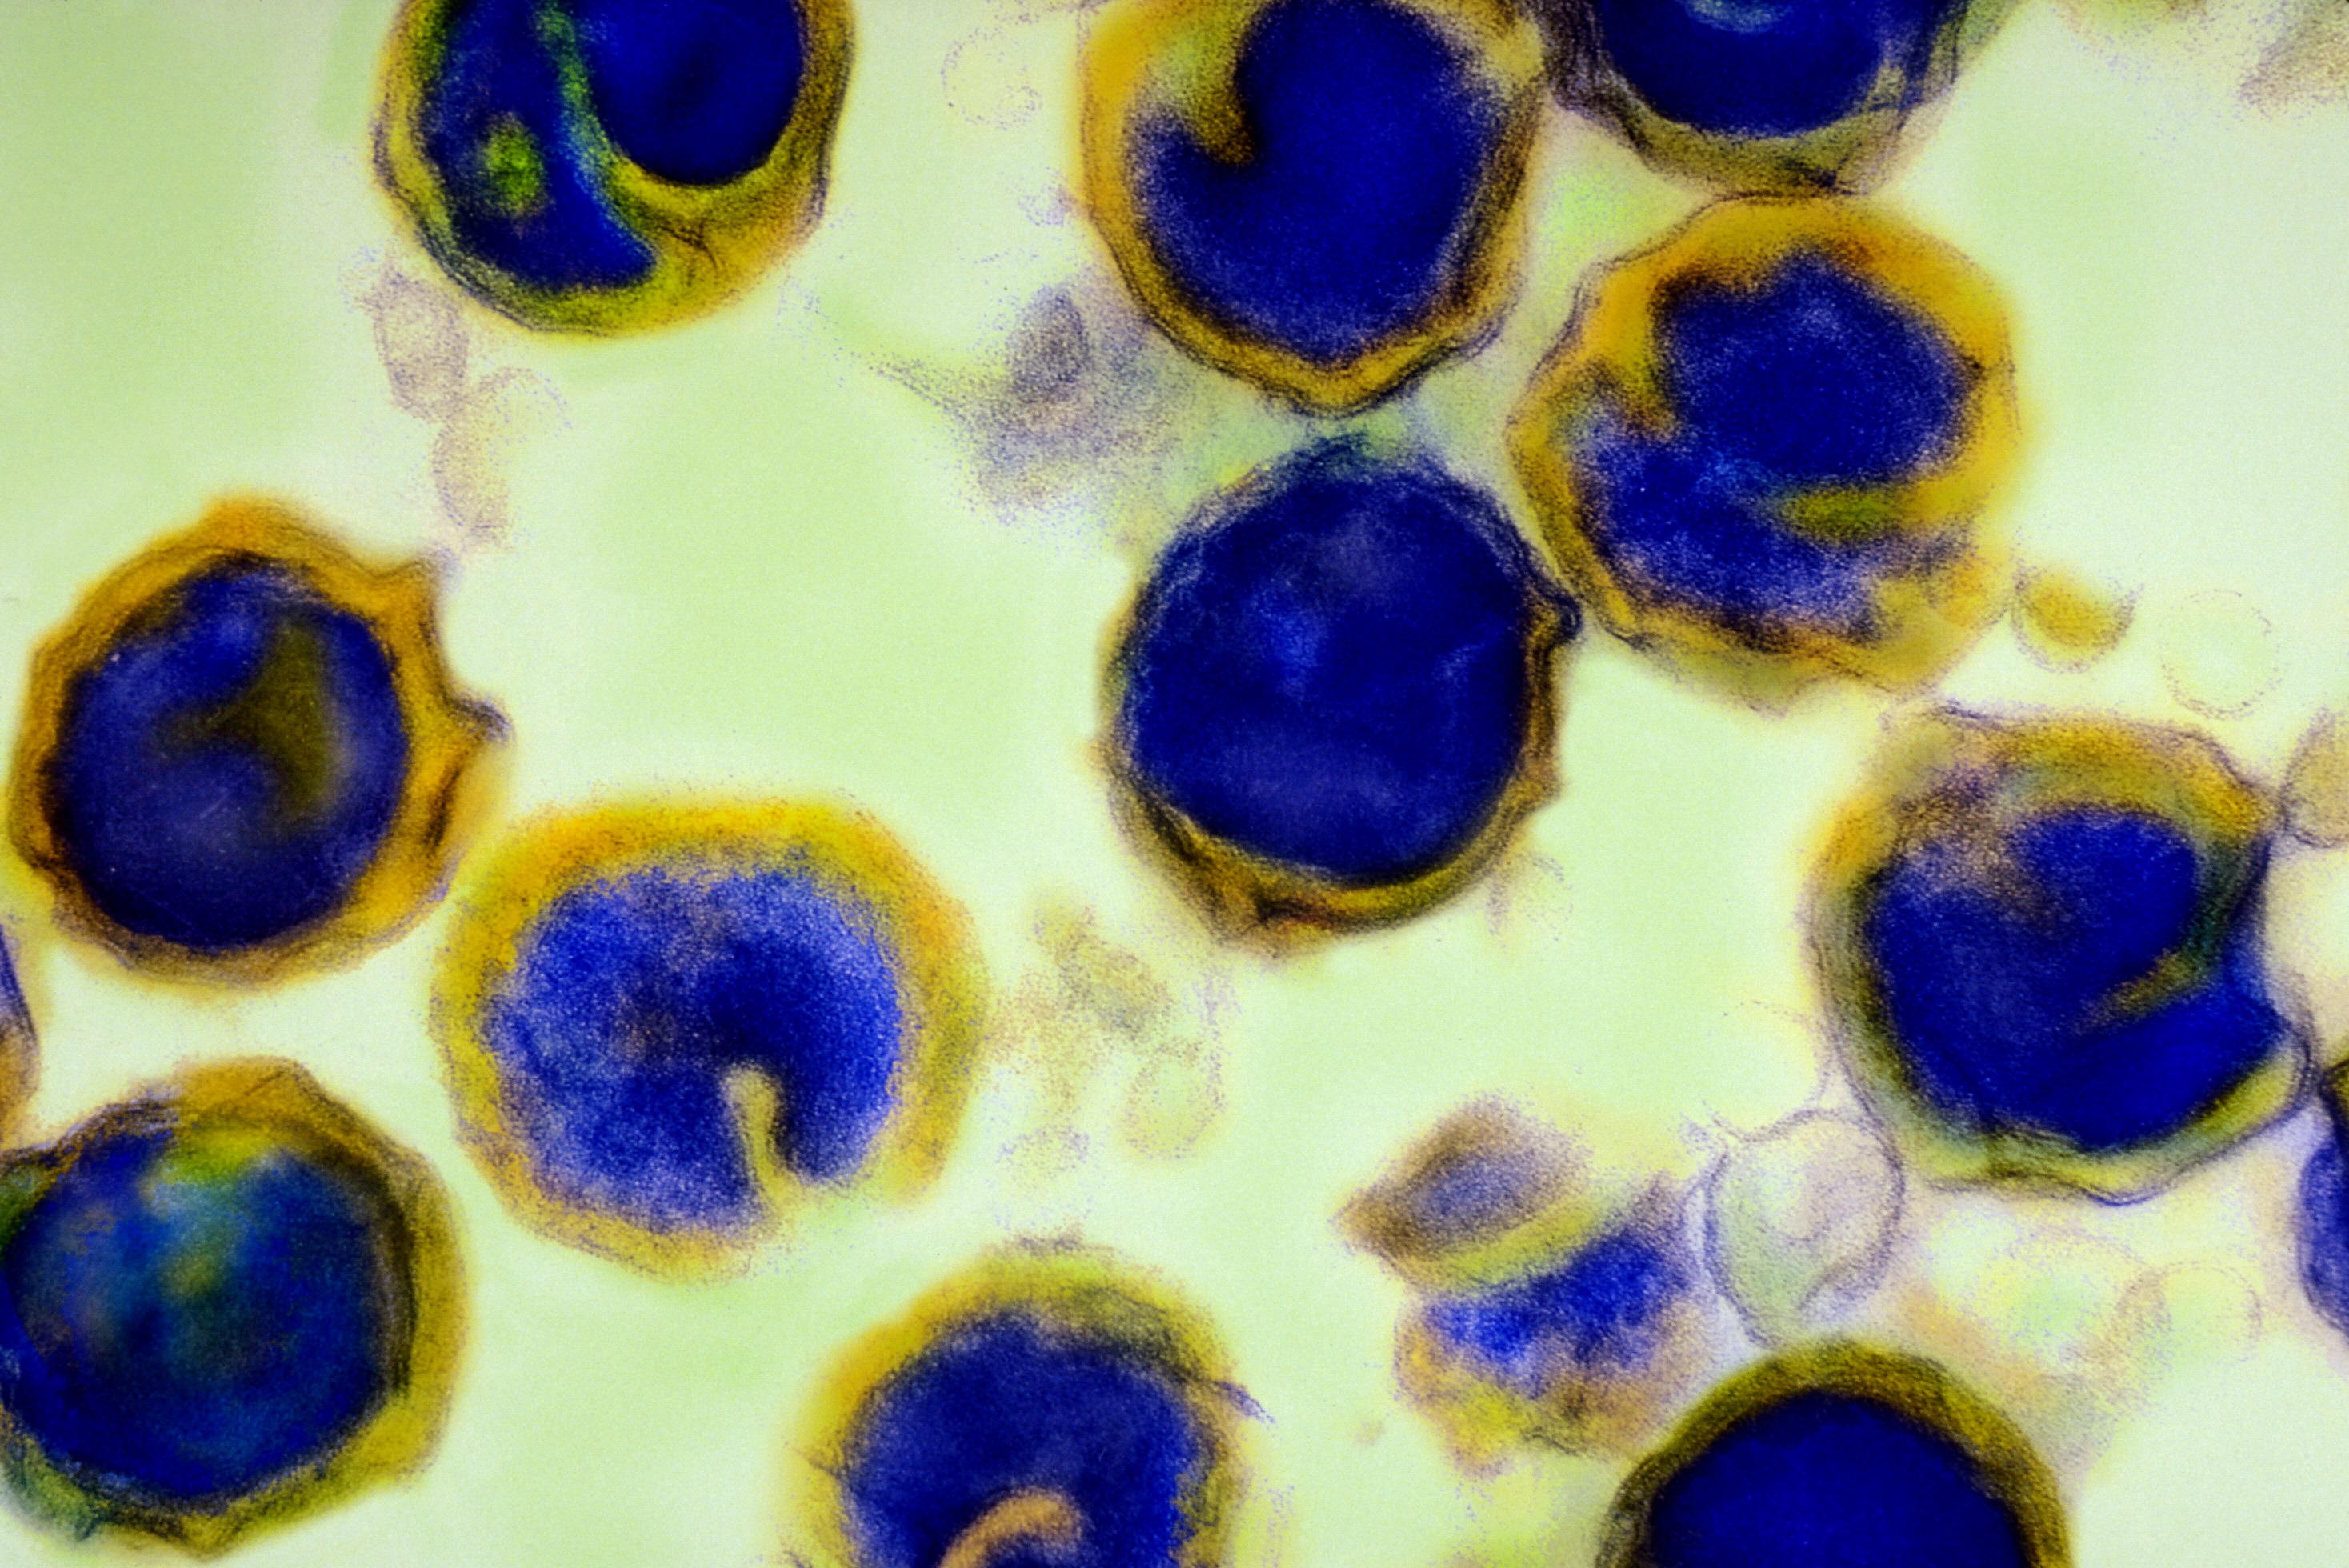 Хламидии 4. Бактерия хламидия трахоматис. Респираторный хламидиоз под микроскопом.